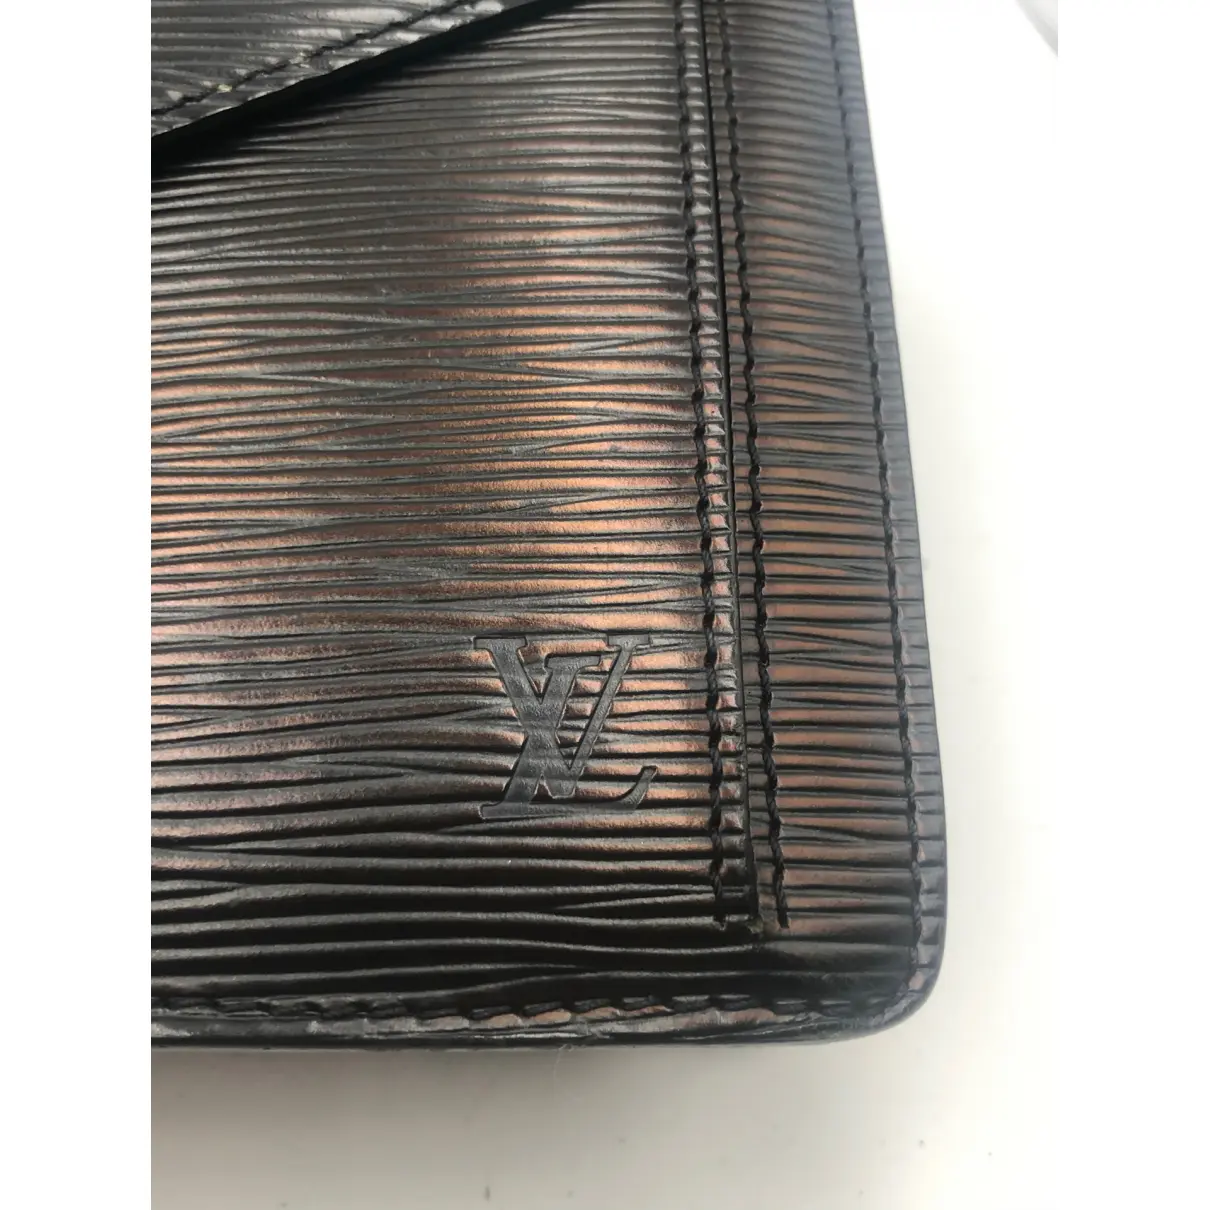 Sénateur leather clutch bag Louis Vuitton